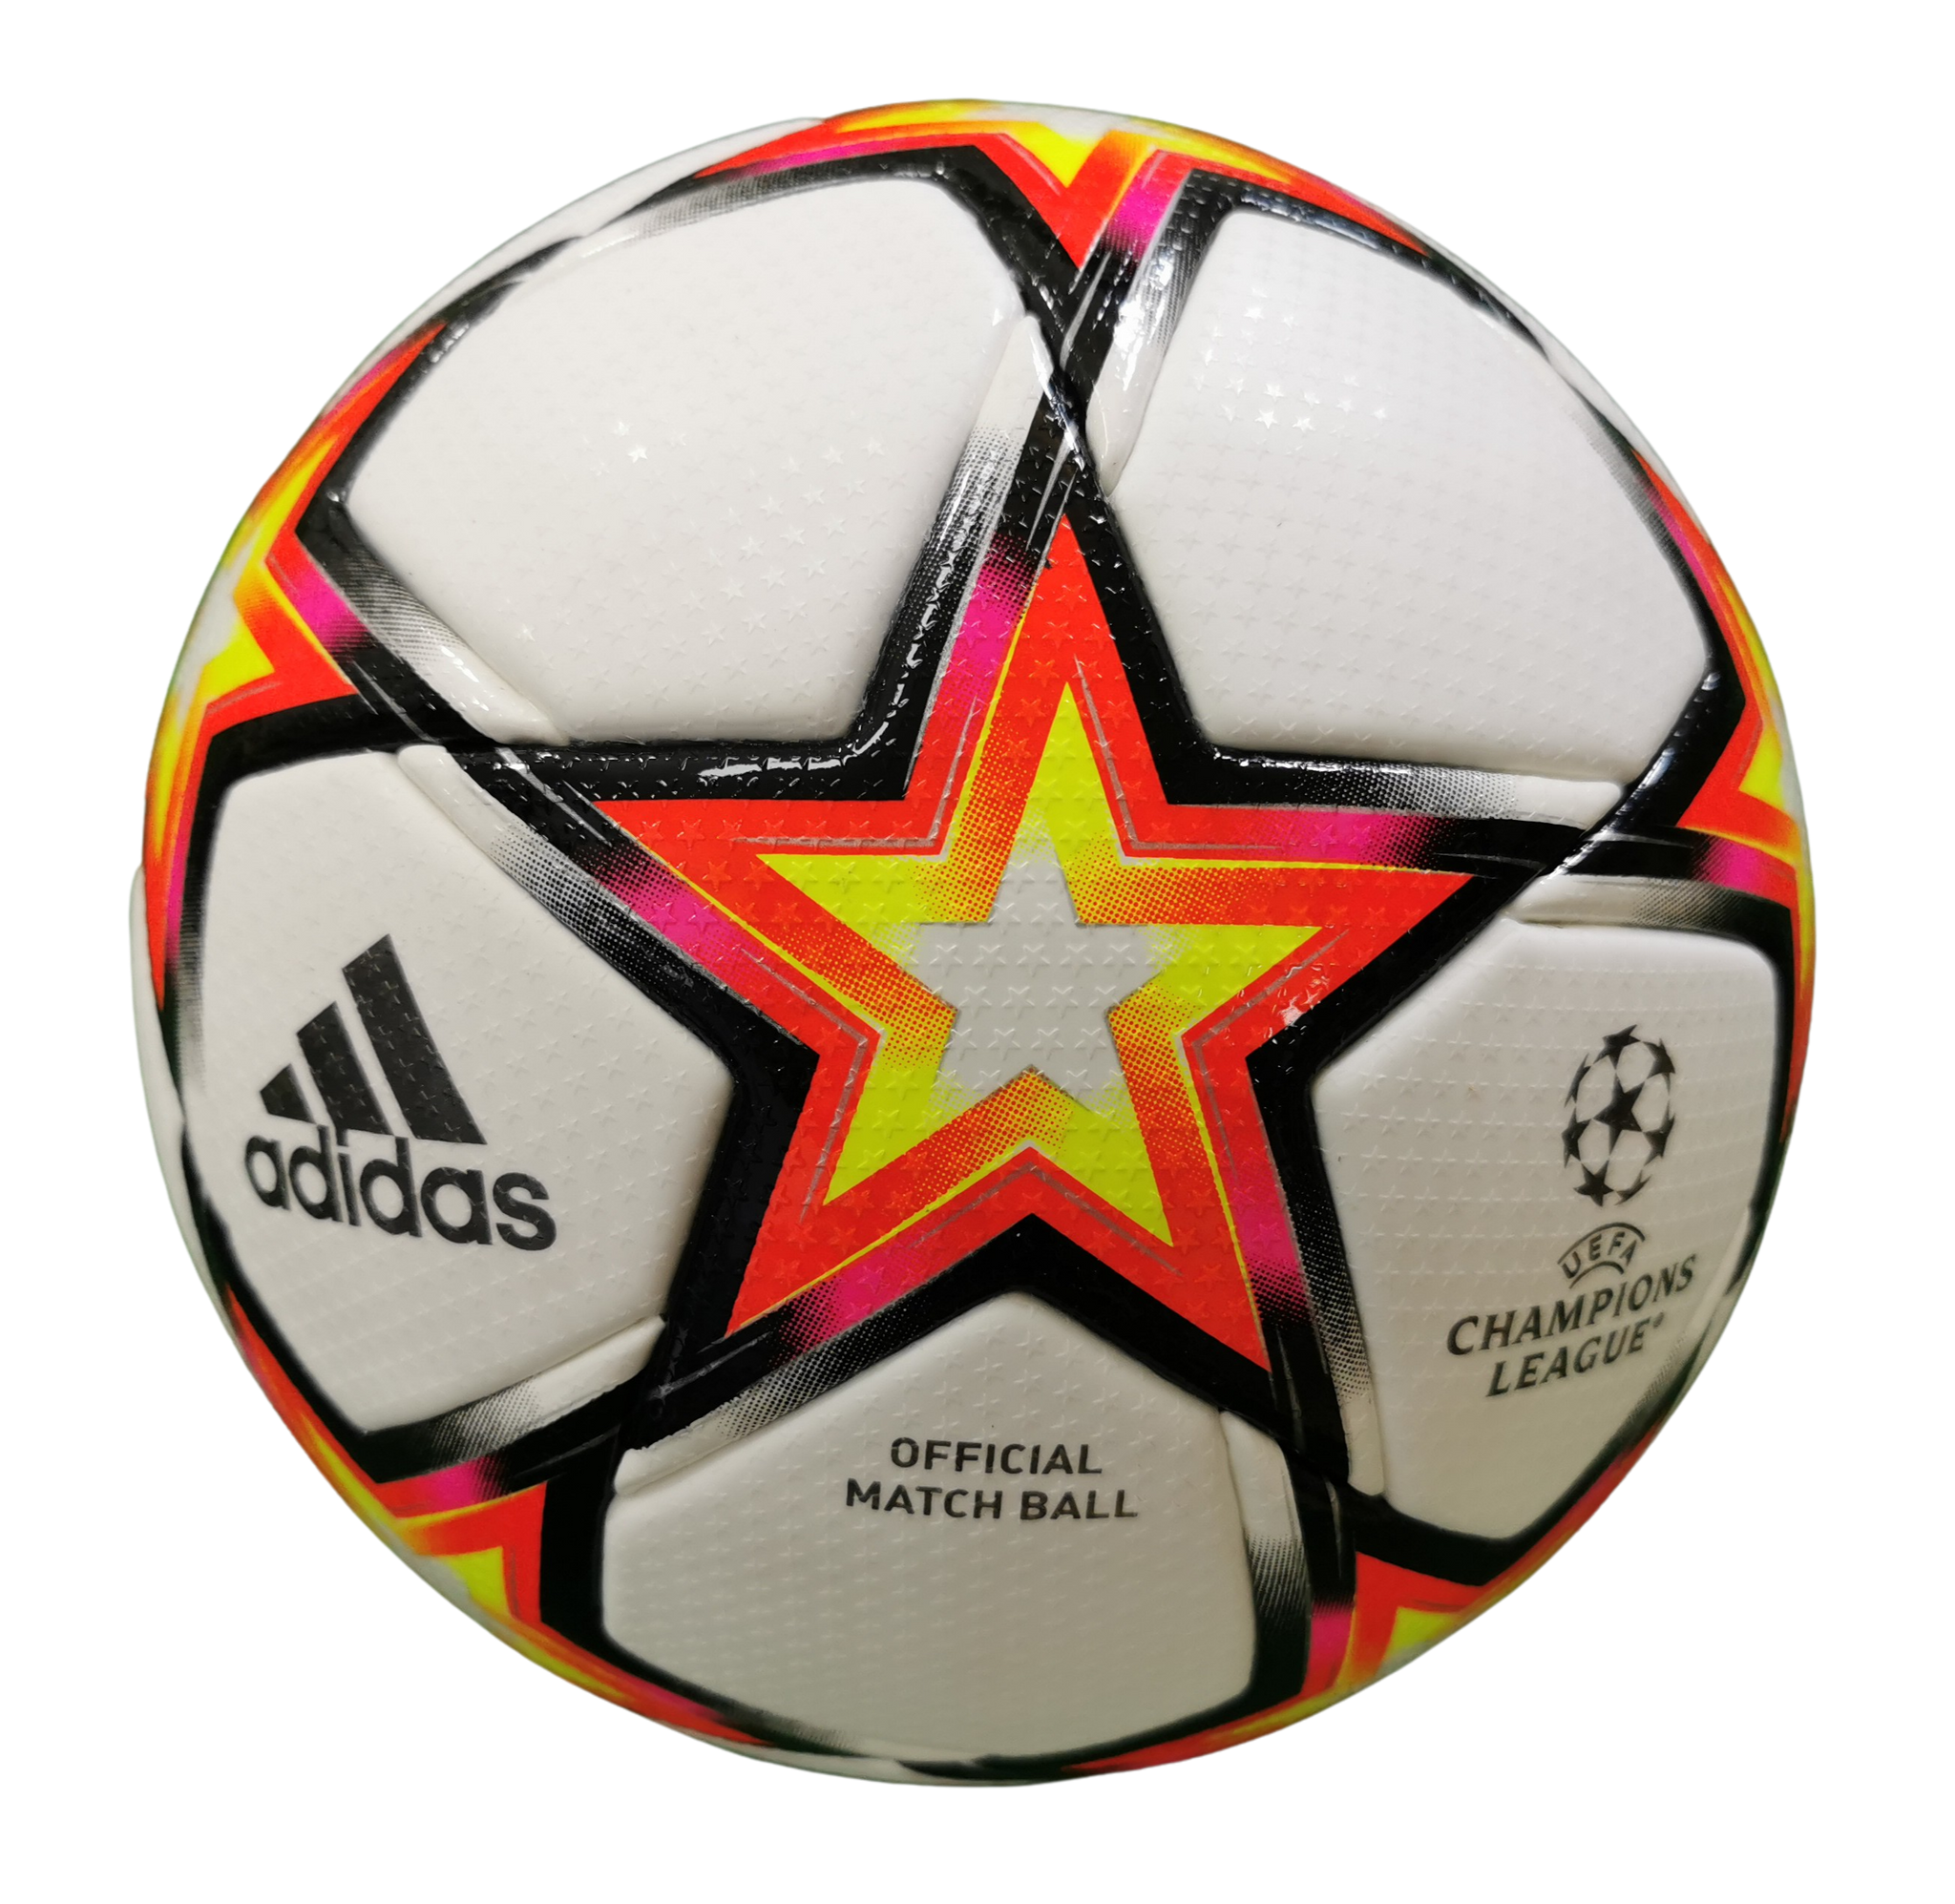 Pyrostorm: Bola da Champions League 2021-2022 Adidas » Mantos do